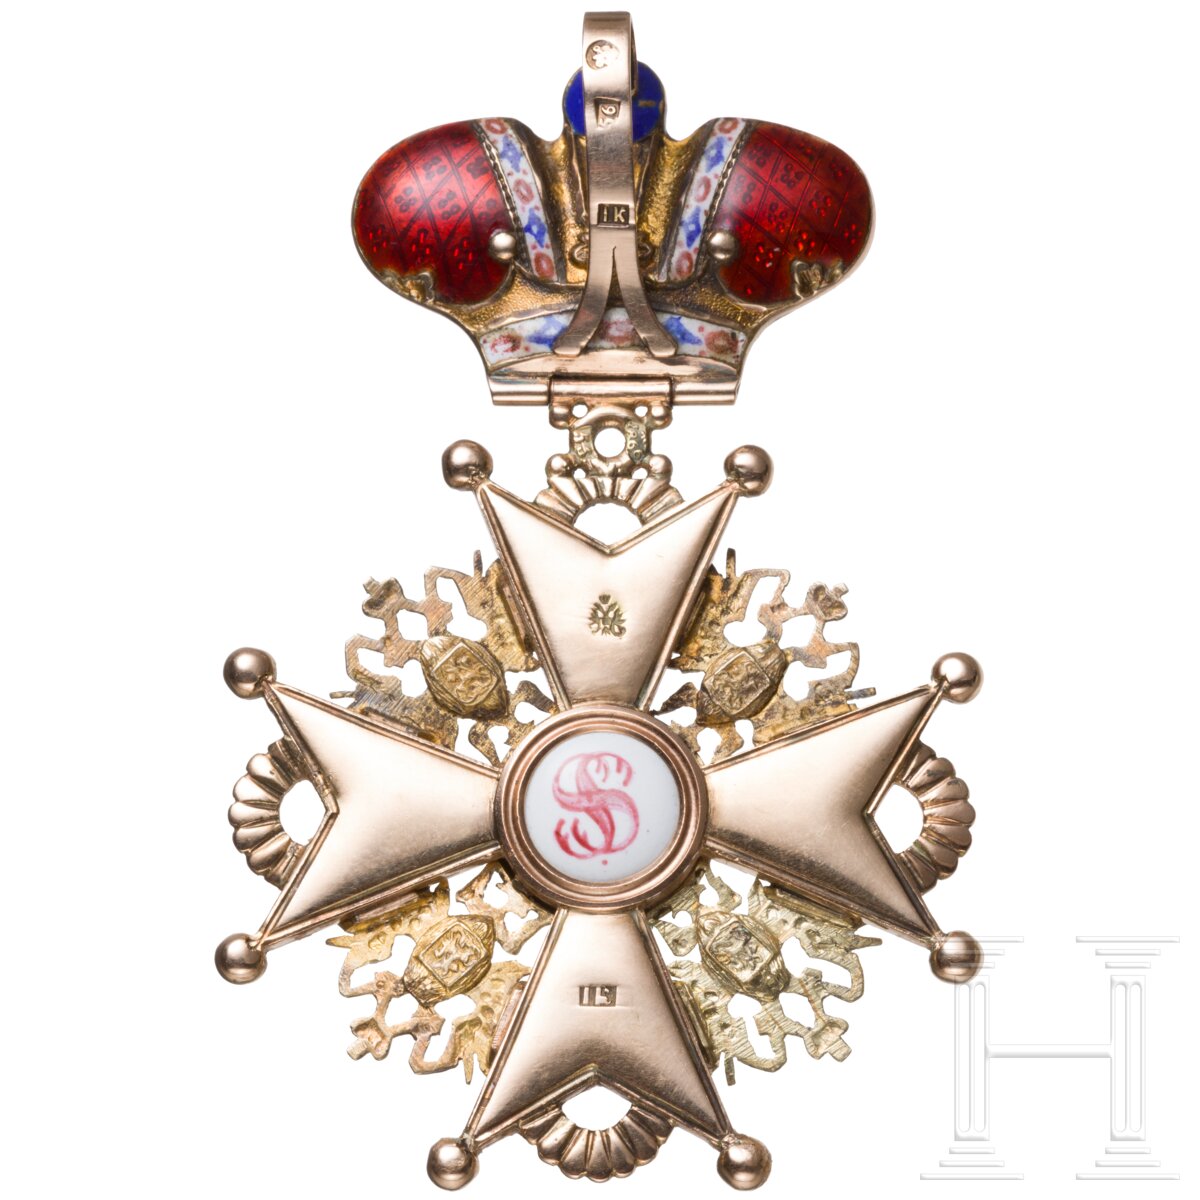 St.-Stanislaus-Orden - Kreuz 2. Klasse mit Krone, Russland, datiert 1866 - Image 2 of 7